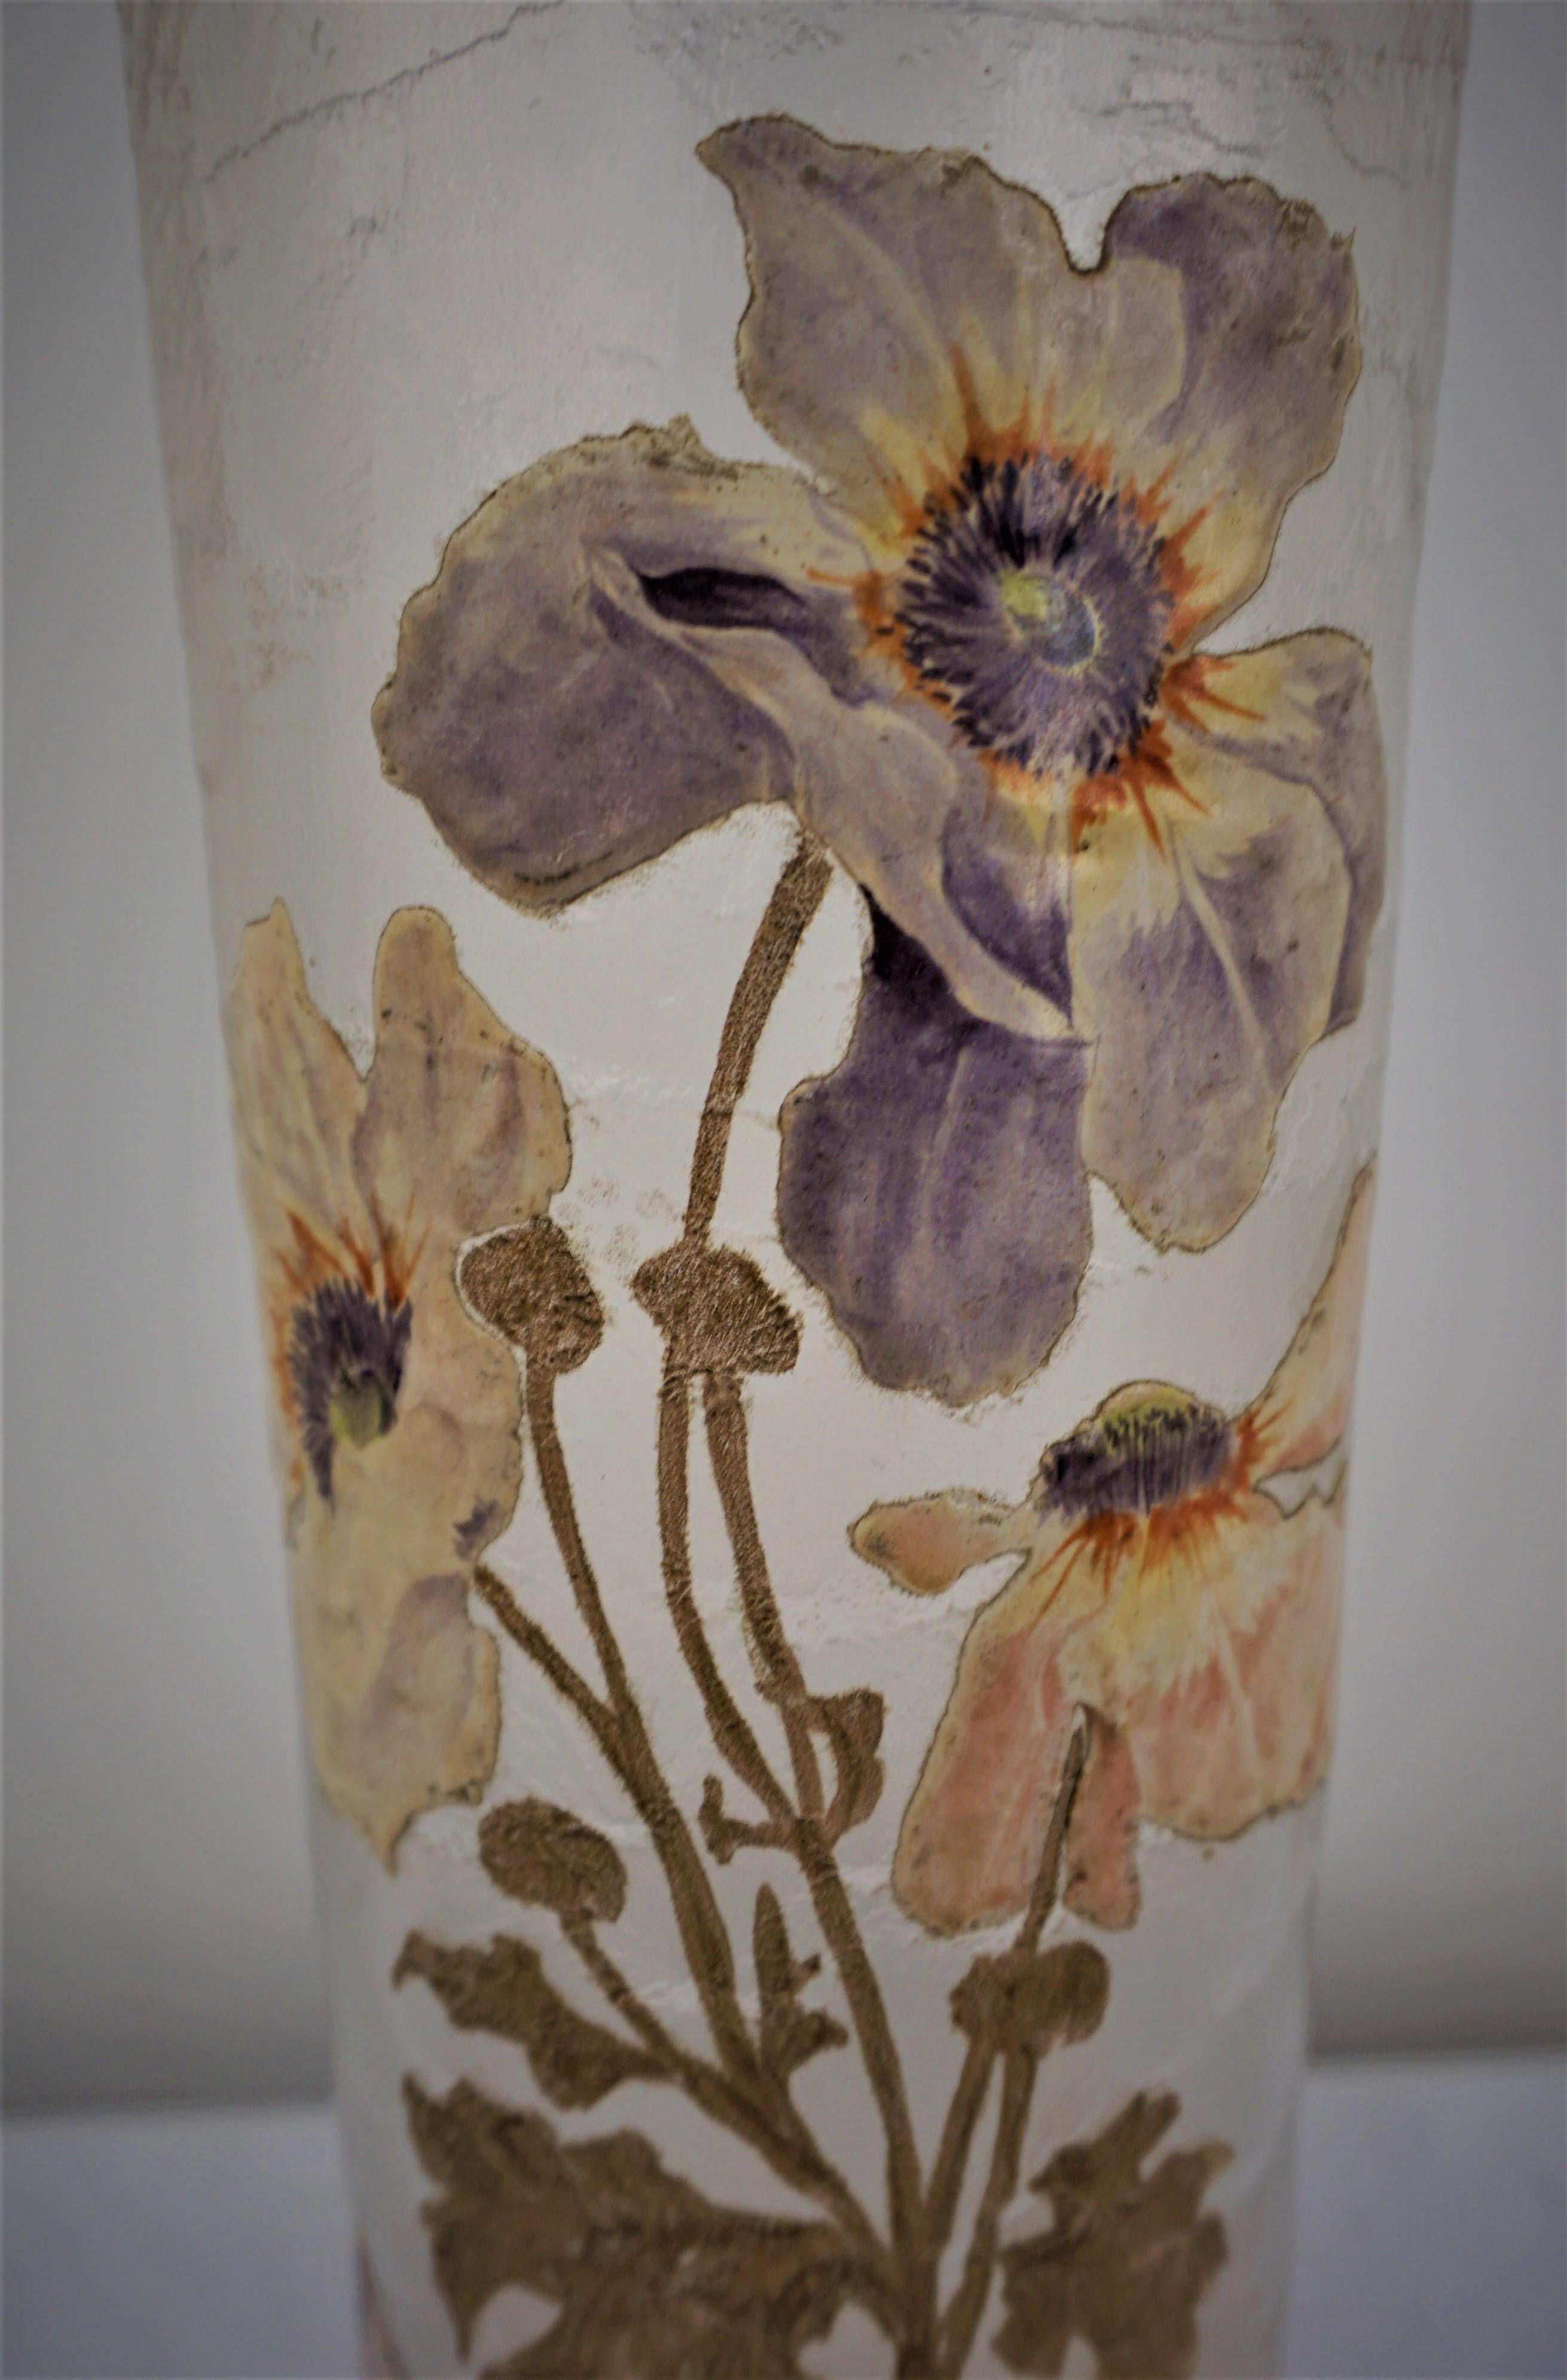 Fantastique vase art nouveau avec des fleurs et des feuilles émaillées et dorées, peintes à la main, sur un verre clair texturé, taillé à l'acide.